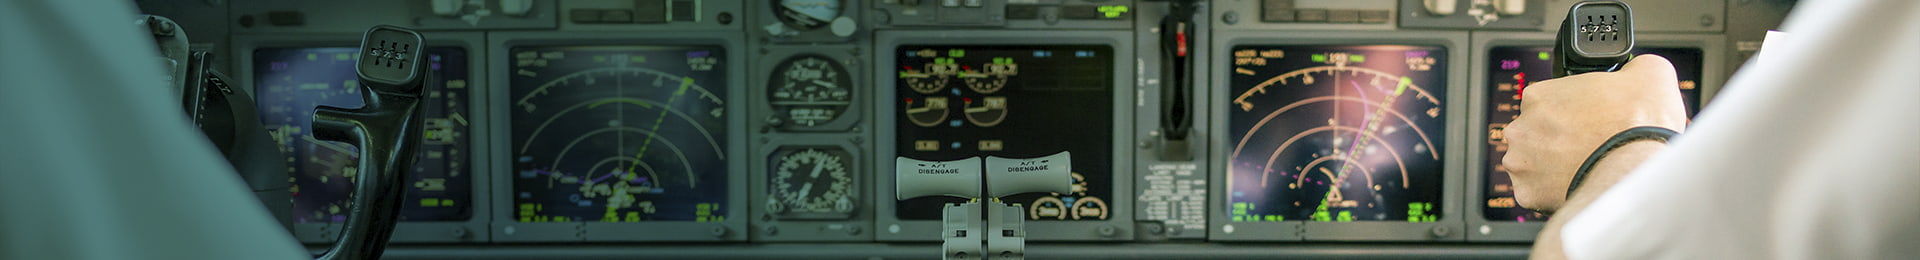 Simuladores de vuelo para aviones civiles Indra Defence & Security